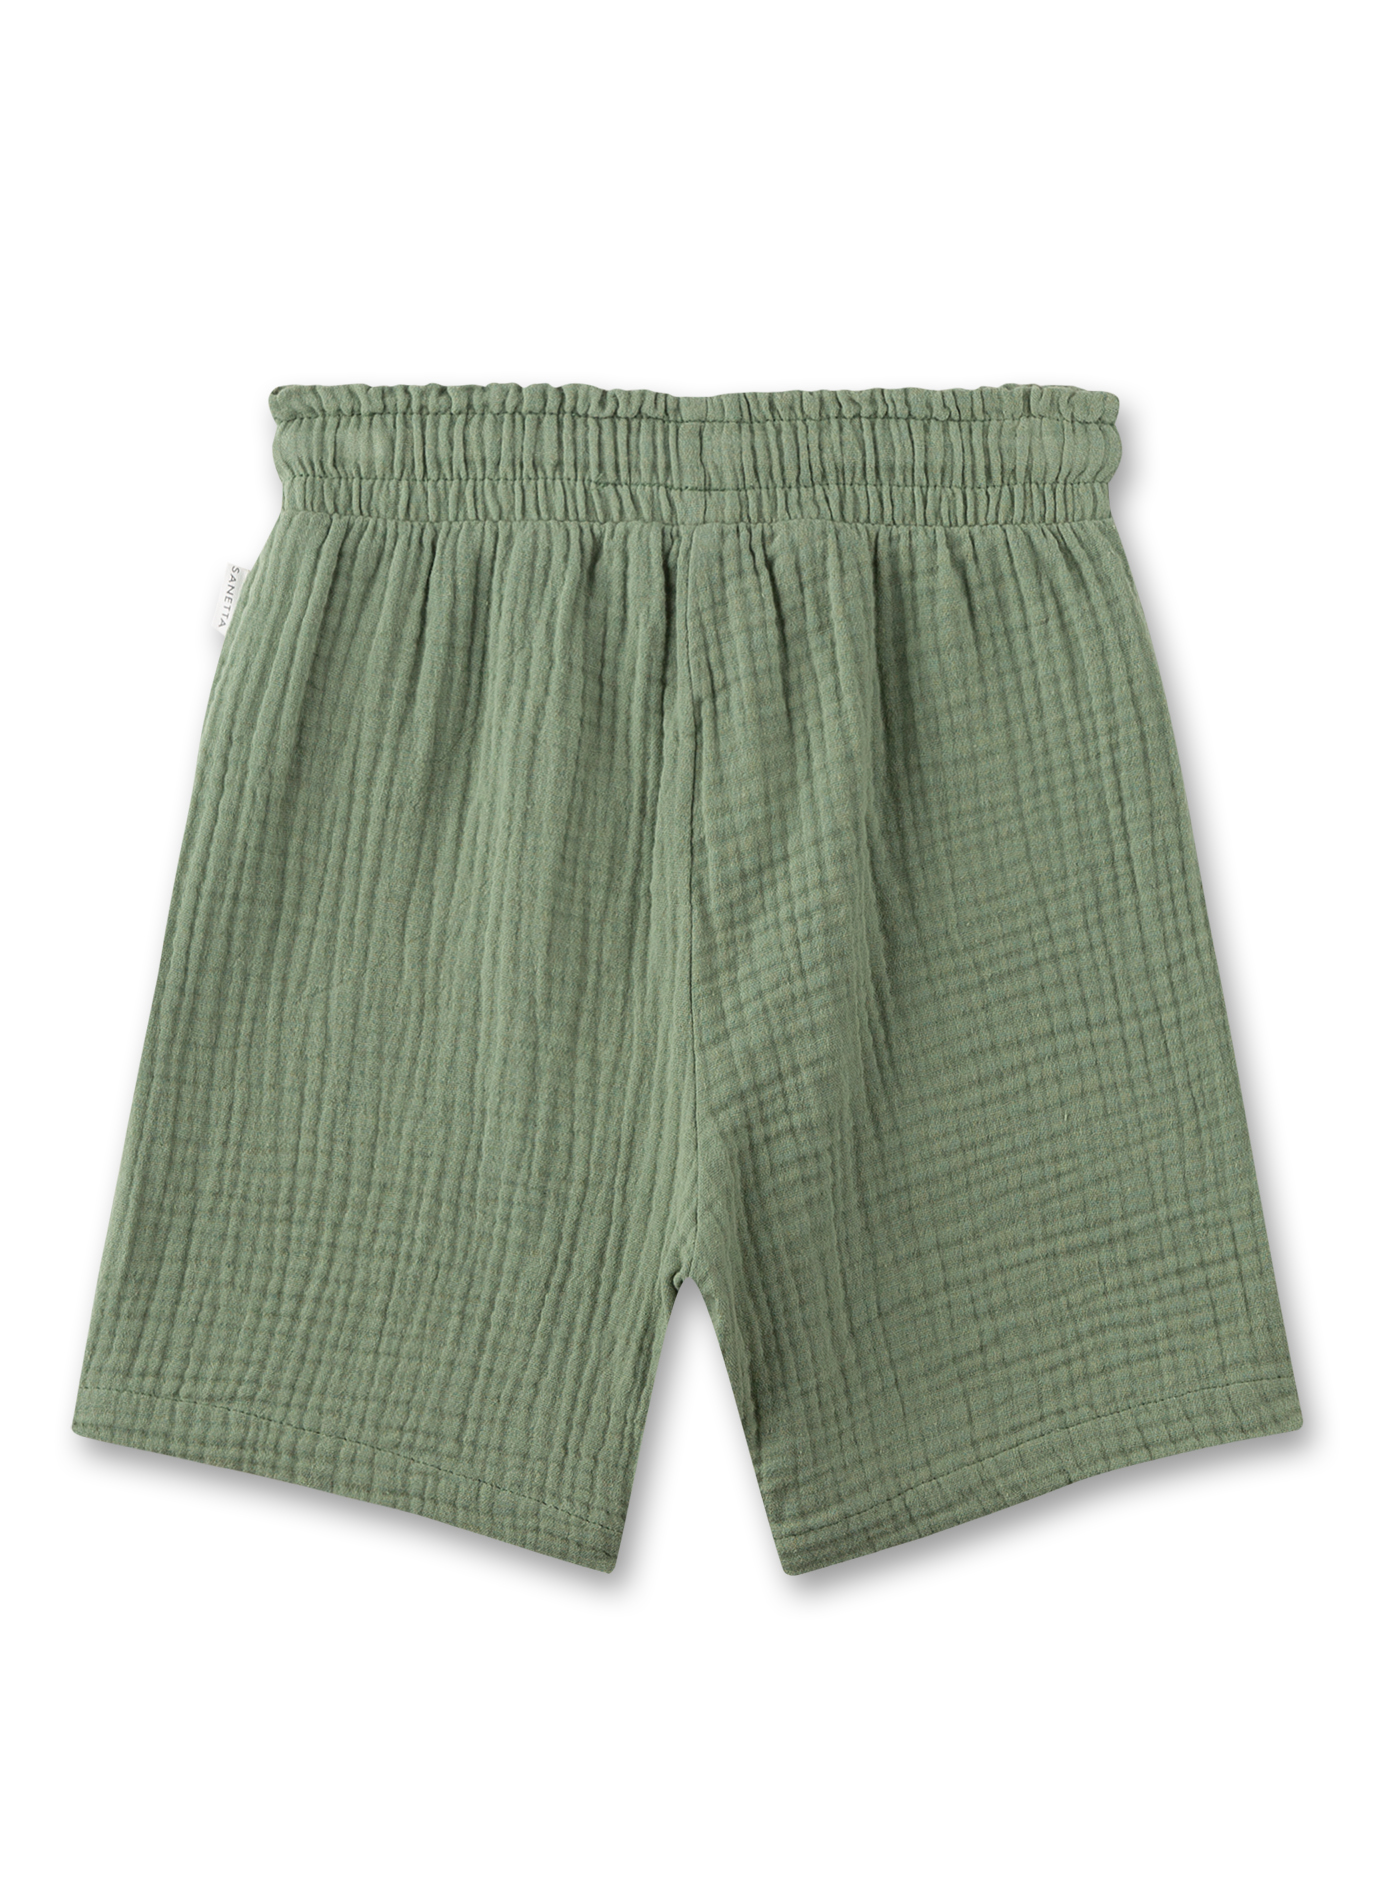 Jungen-Shorts Grün aus Musselin